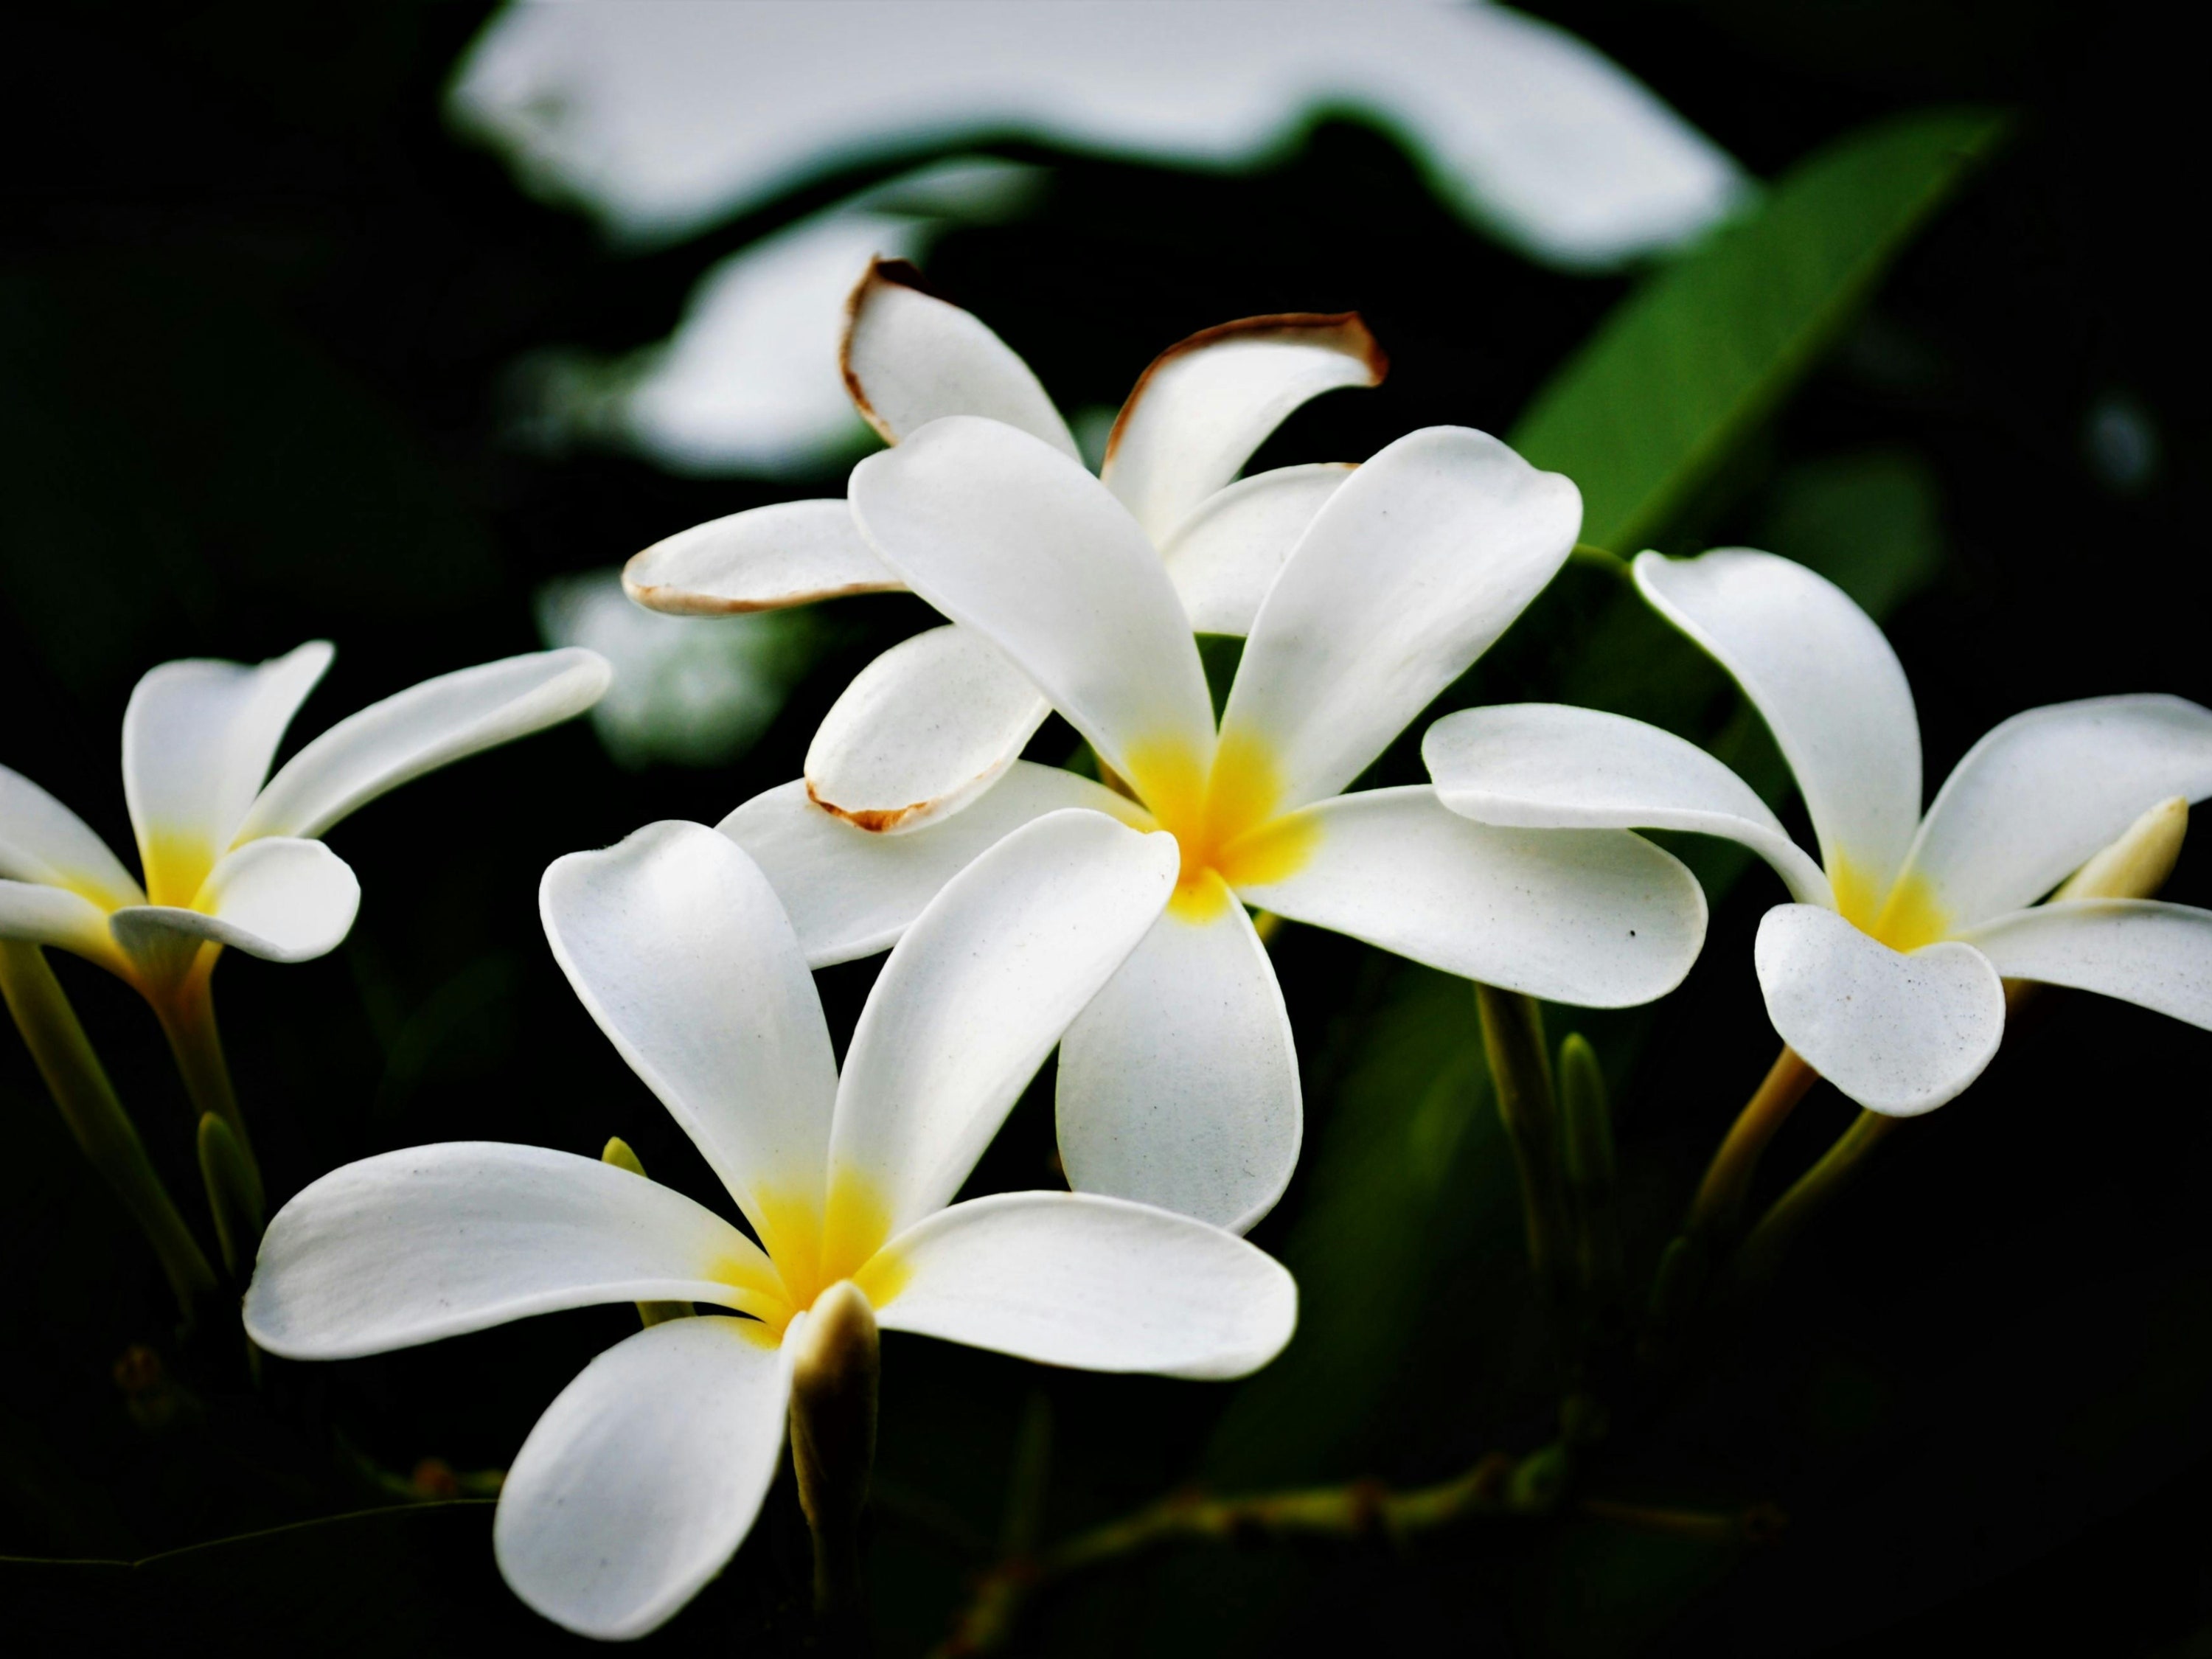 flor de mayo: la planta que representa la alegría y amor del mes